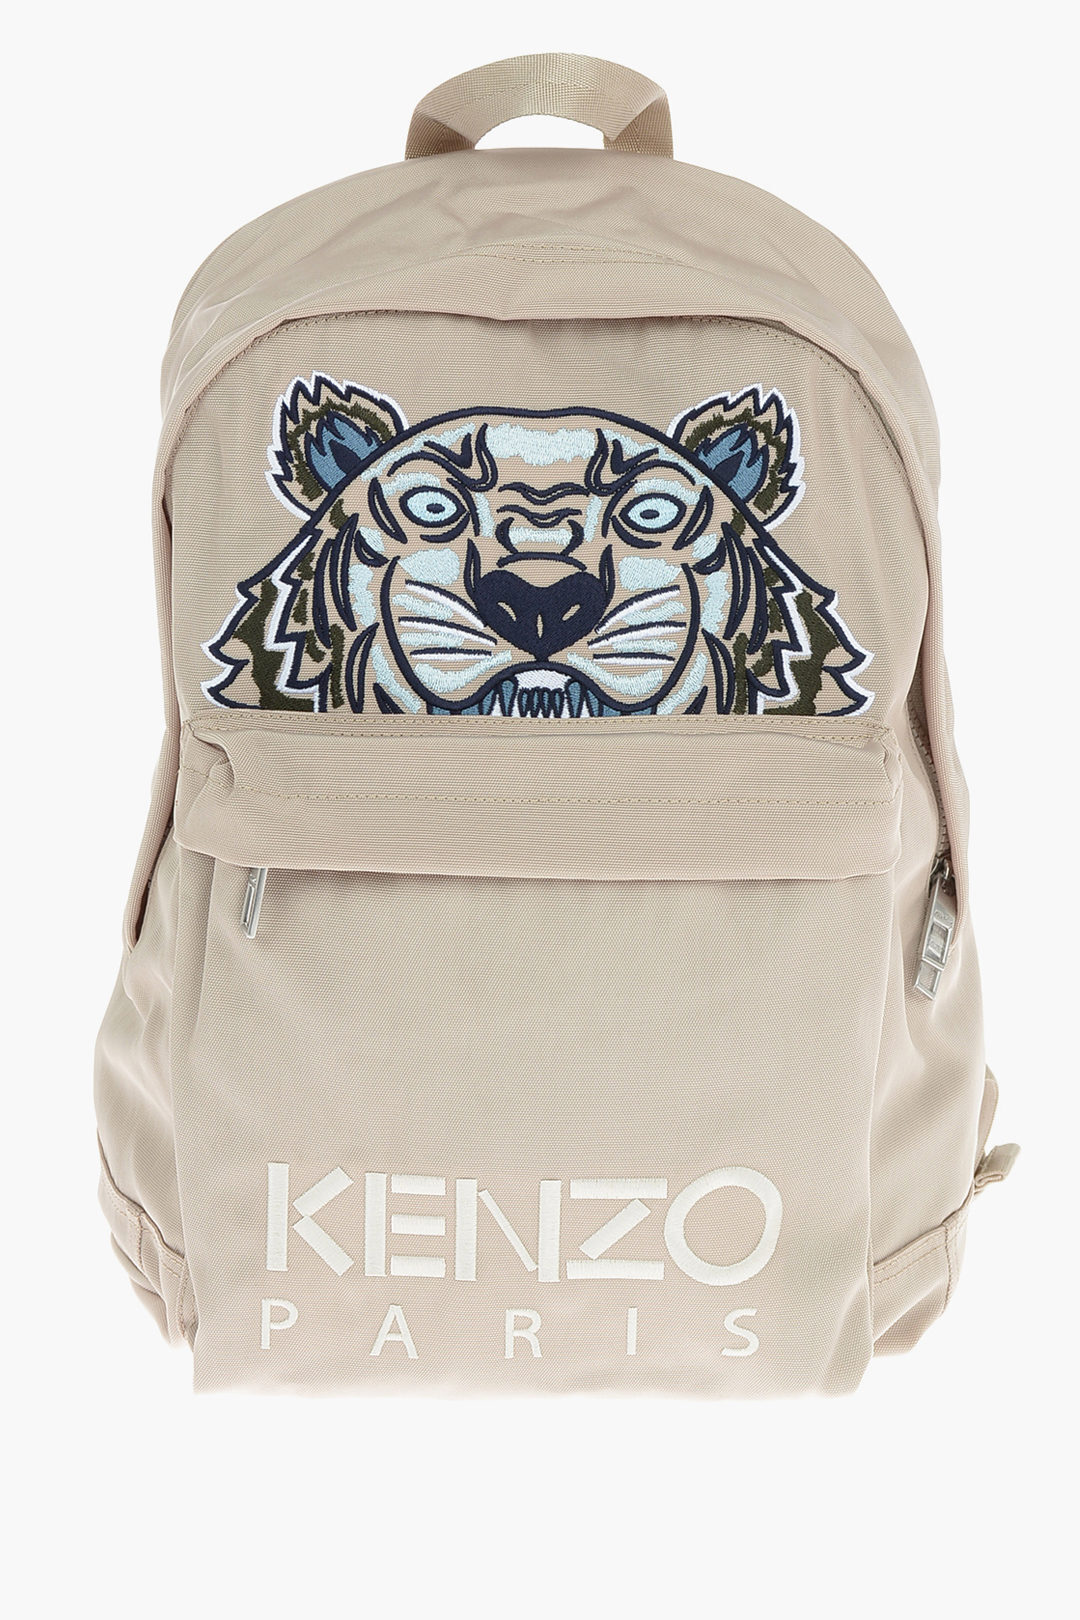 KENZO ケンゾー 刺繍 タイガー トラ バックパック リュック バッグ